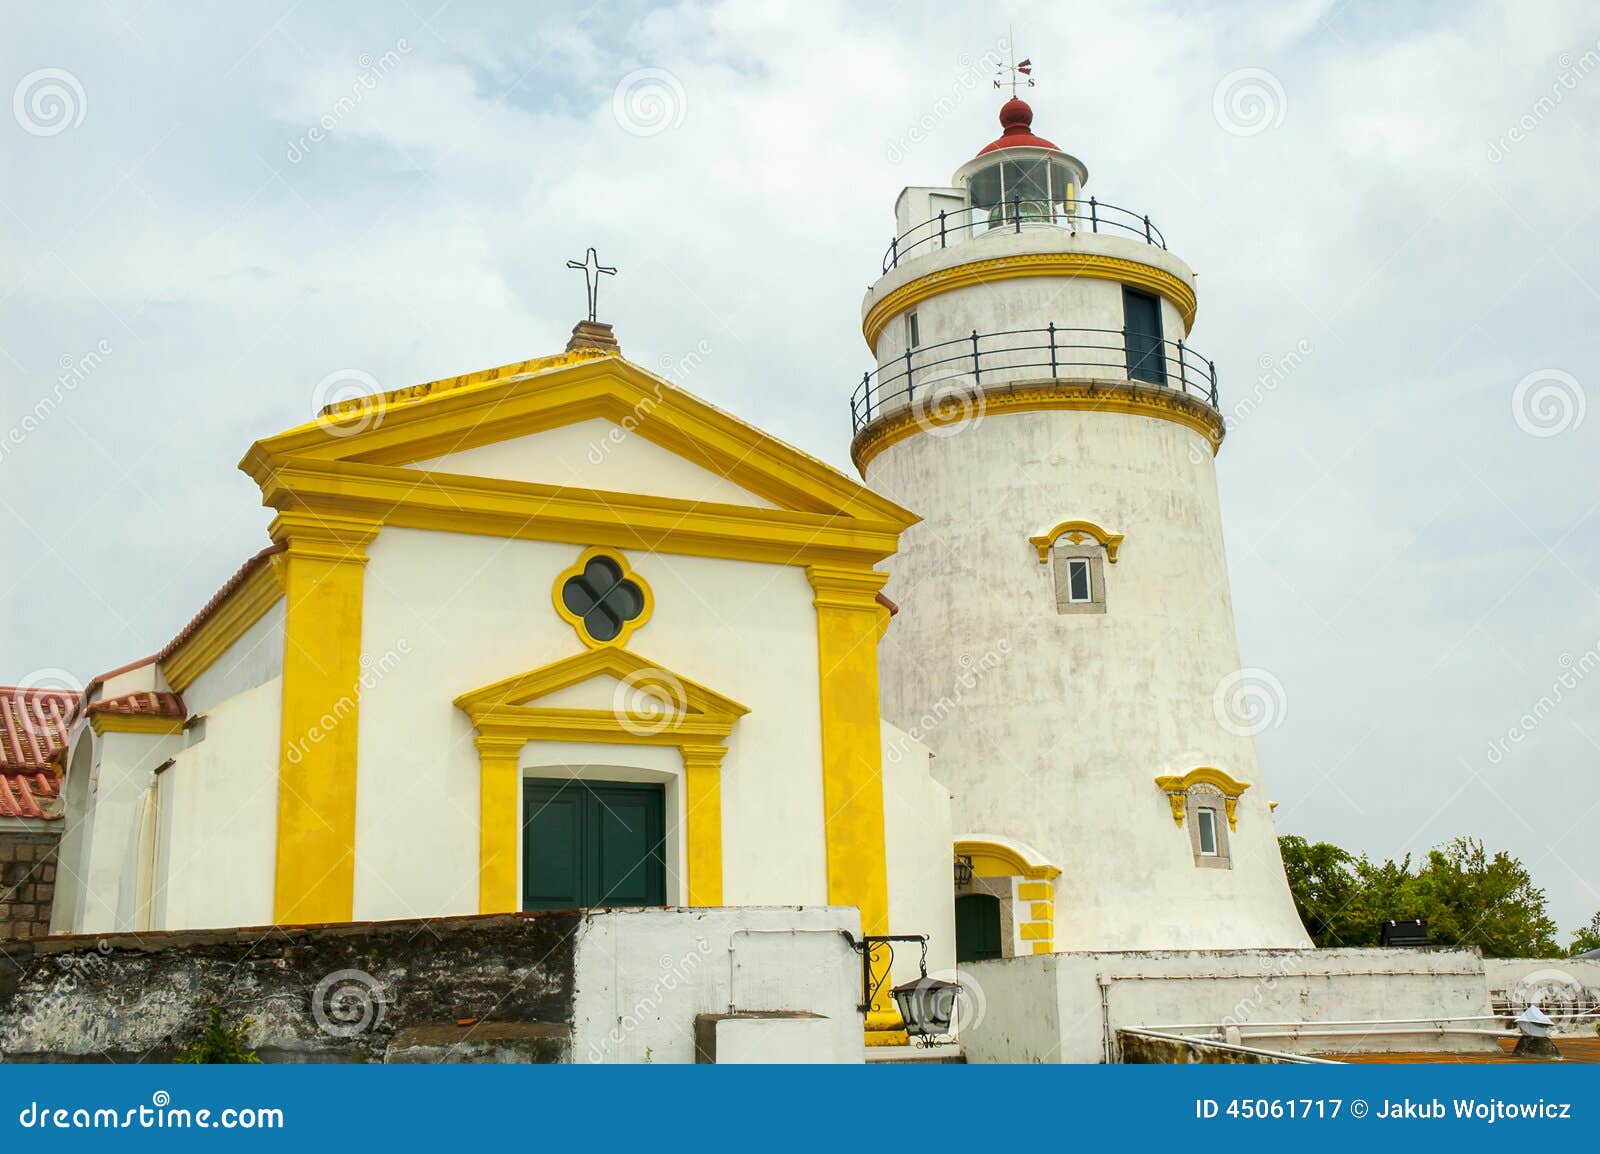 guia lighthouse, fortress and chapel, macau